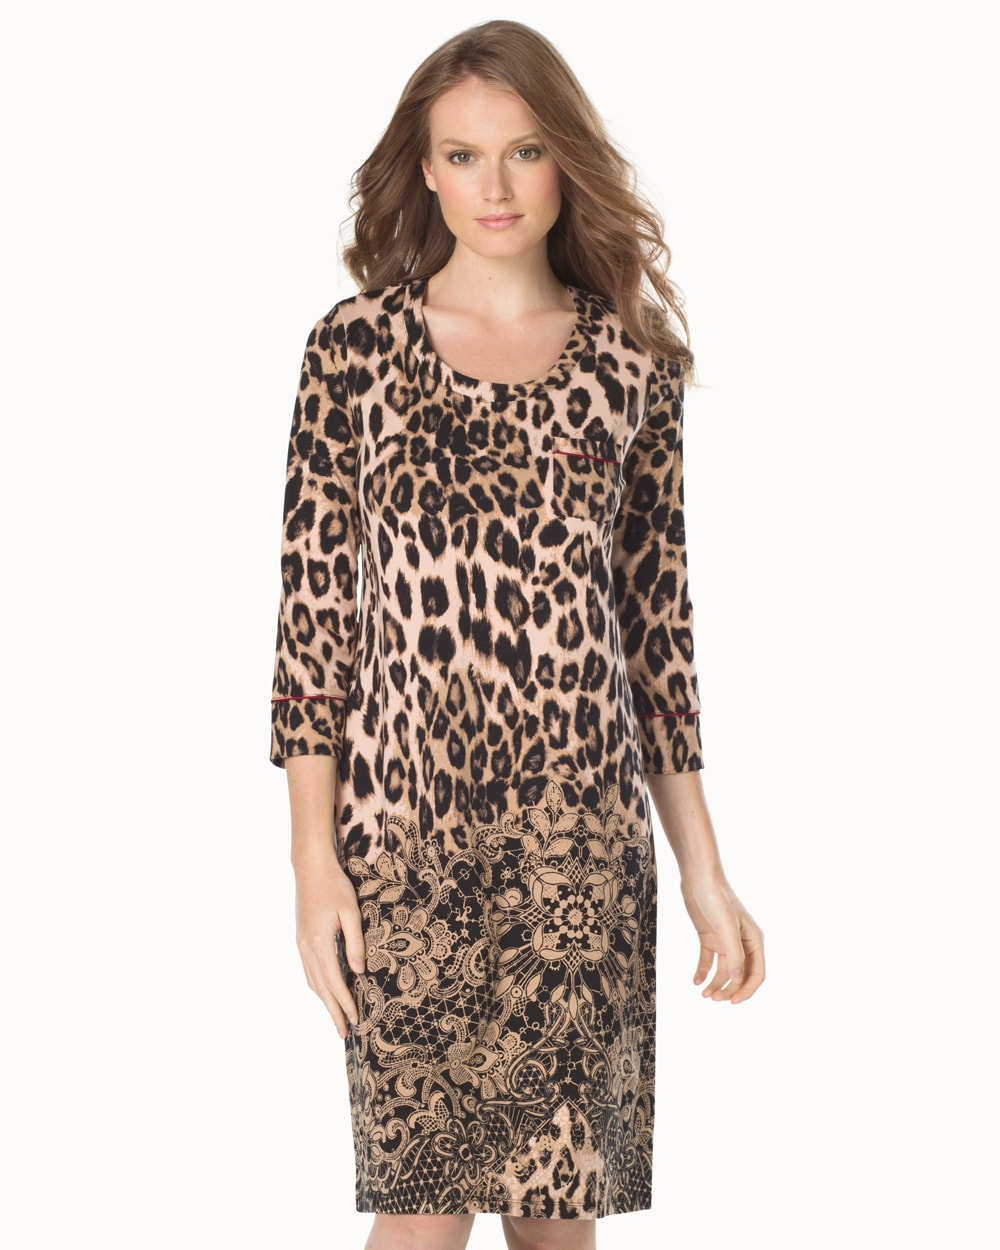 Embraceable 3/4 Sleeve Sleepshirt Lovely Leopard Tan Border